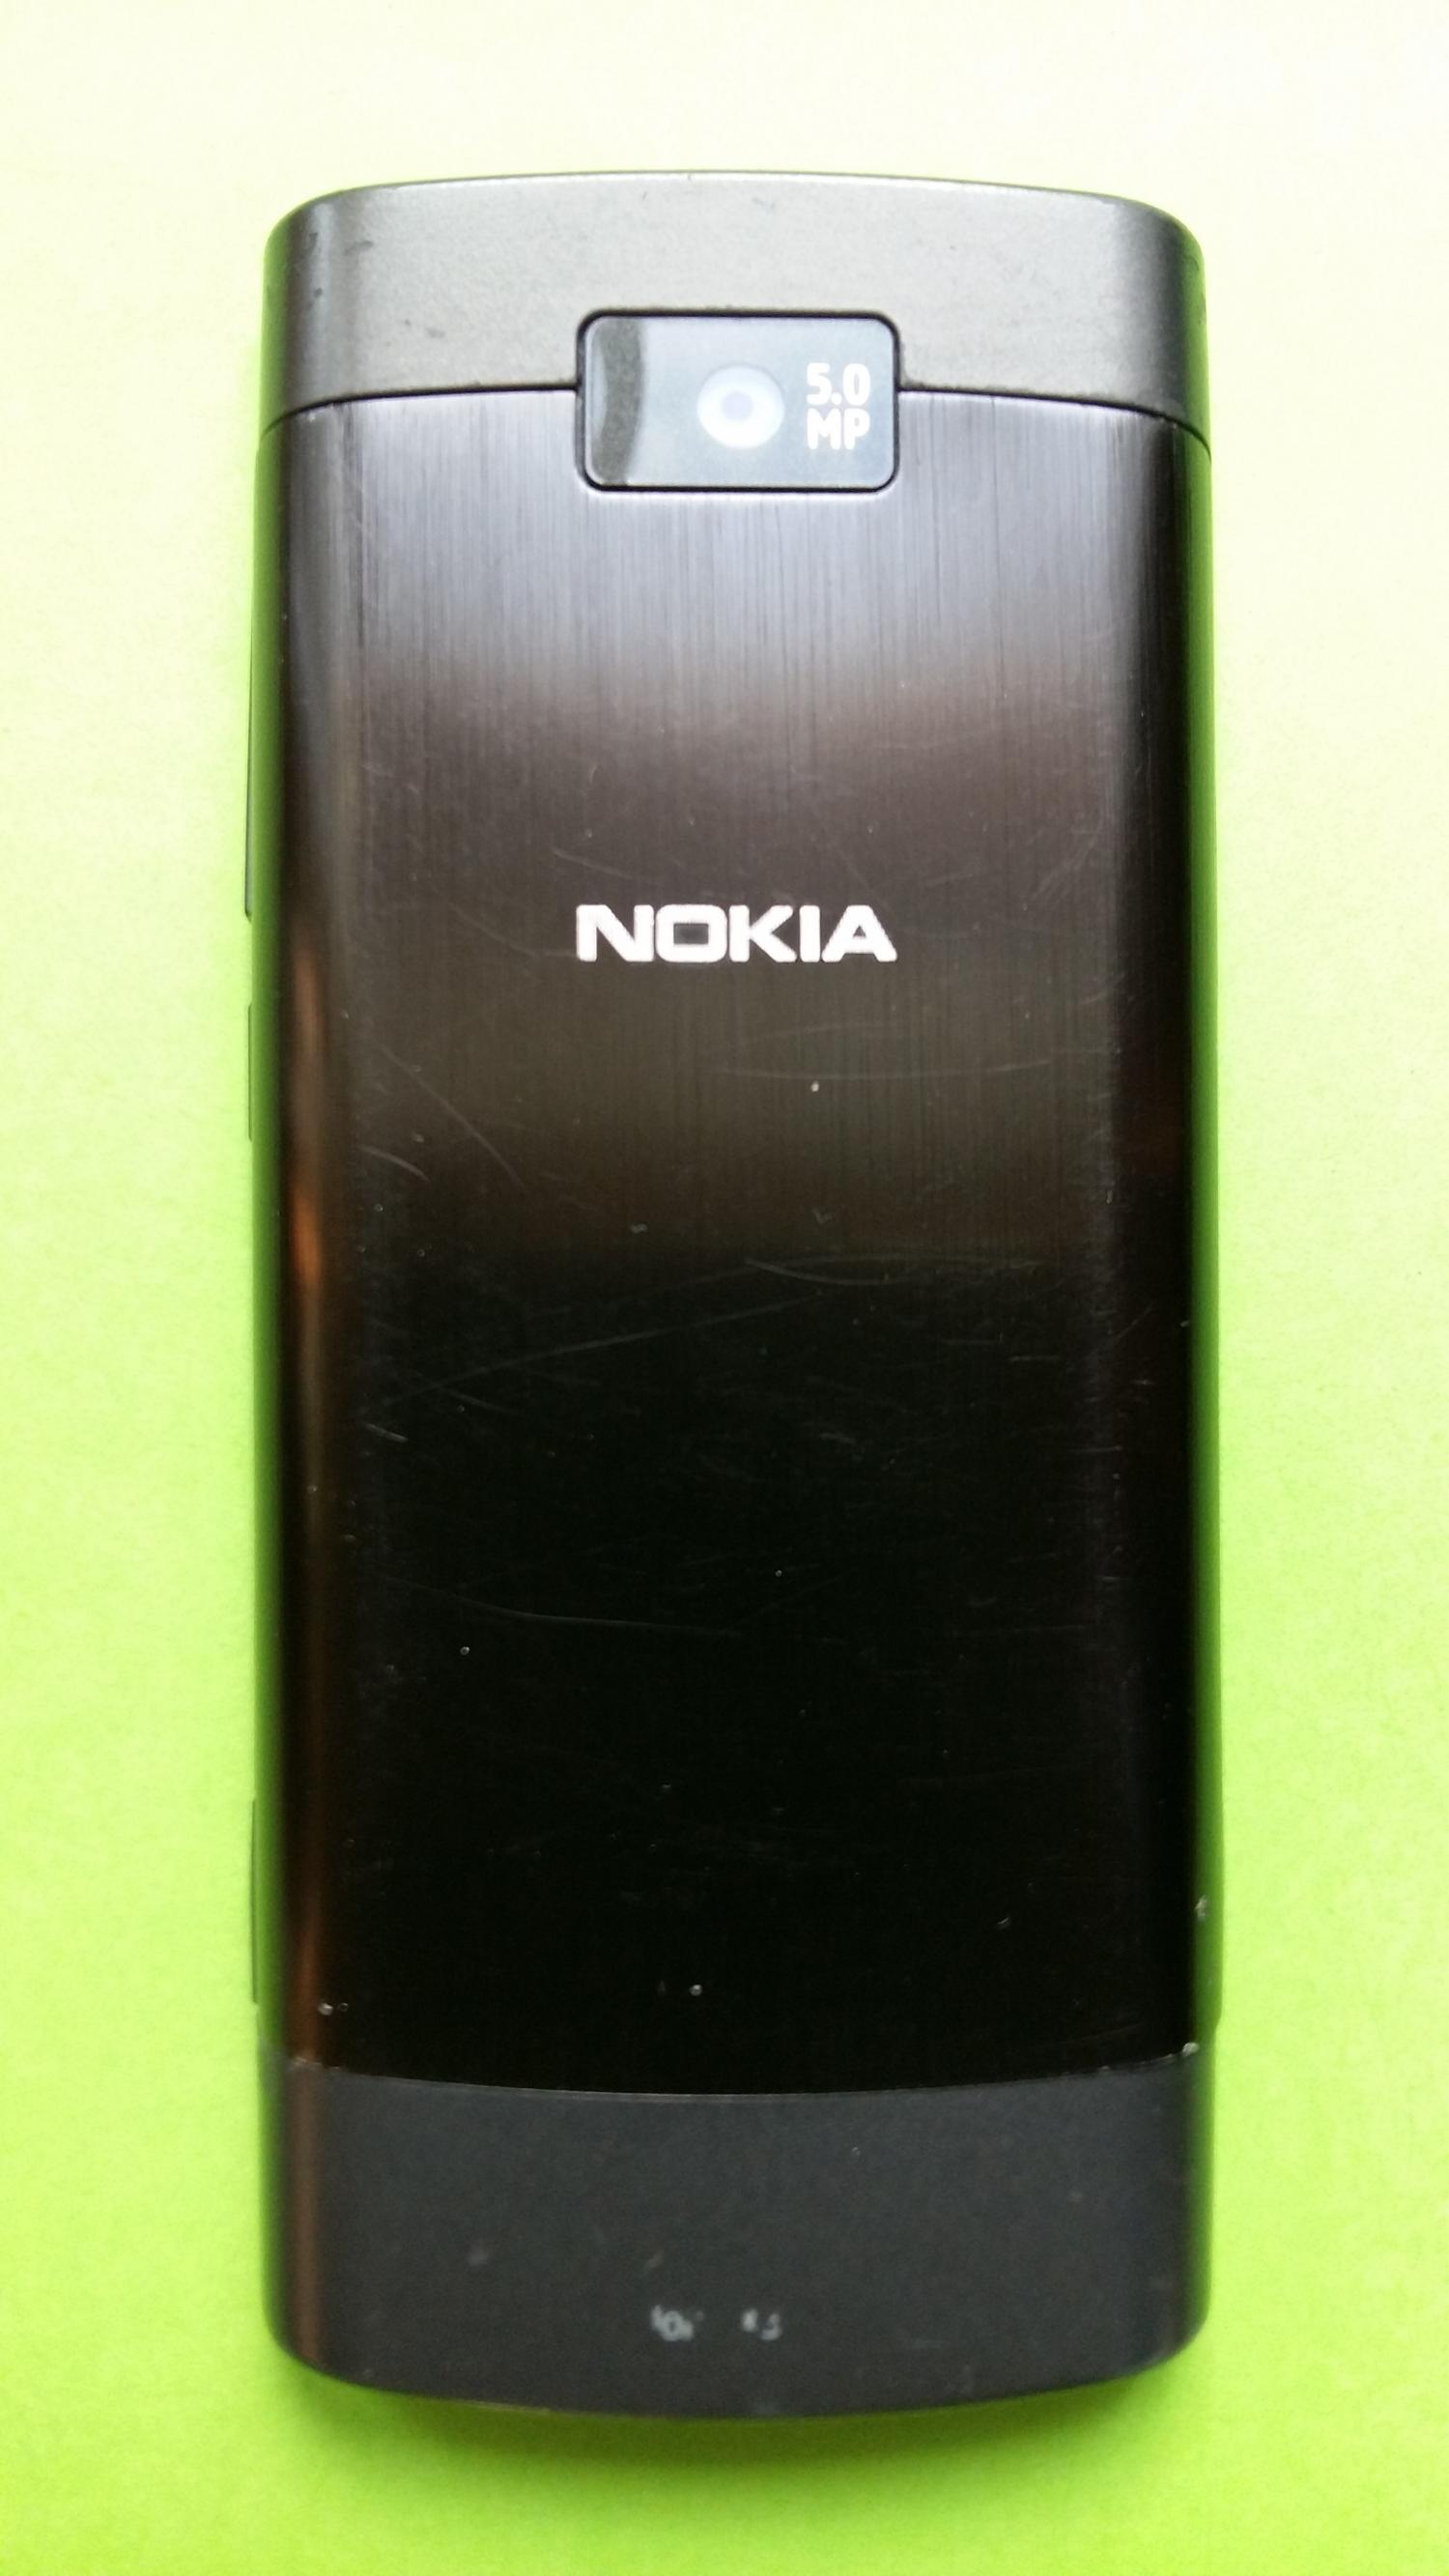 image-7299910-Nokia X3-02 (1)2.jpg